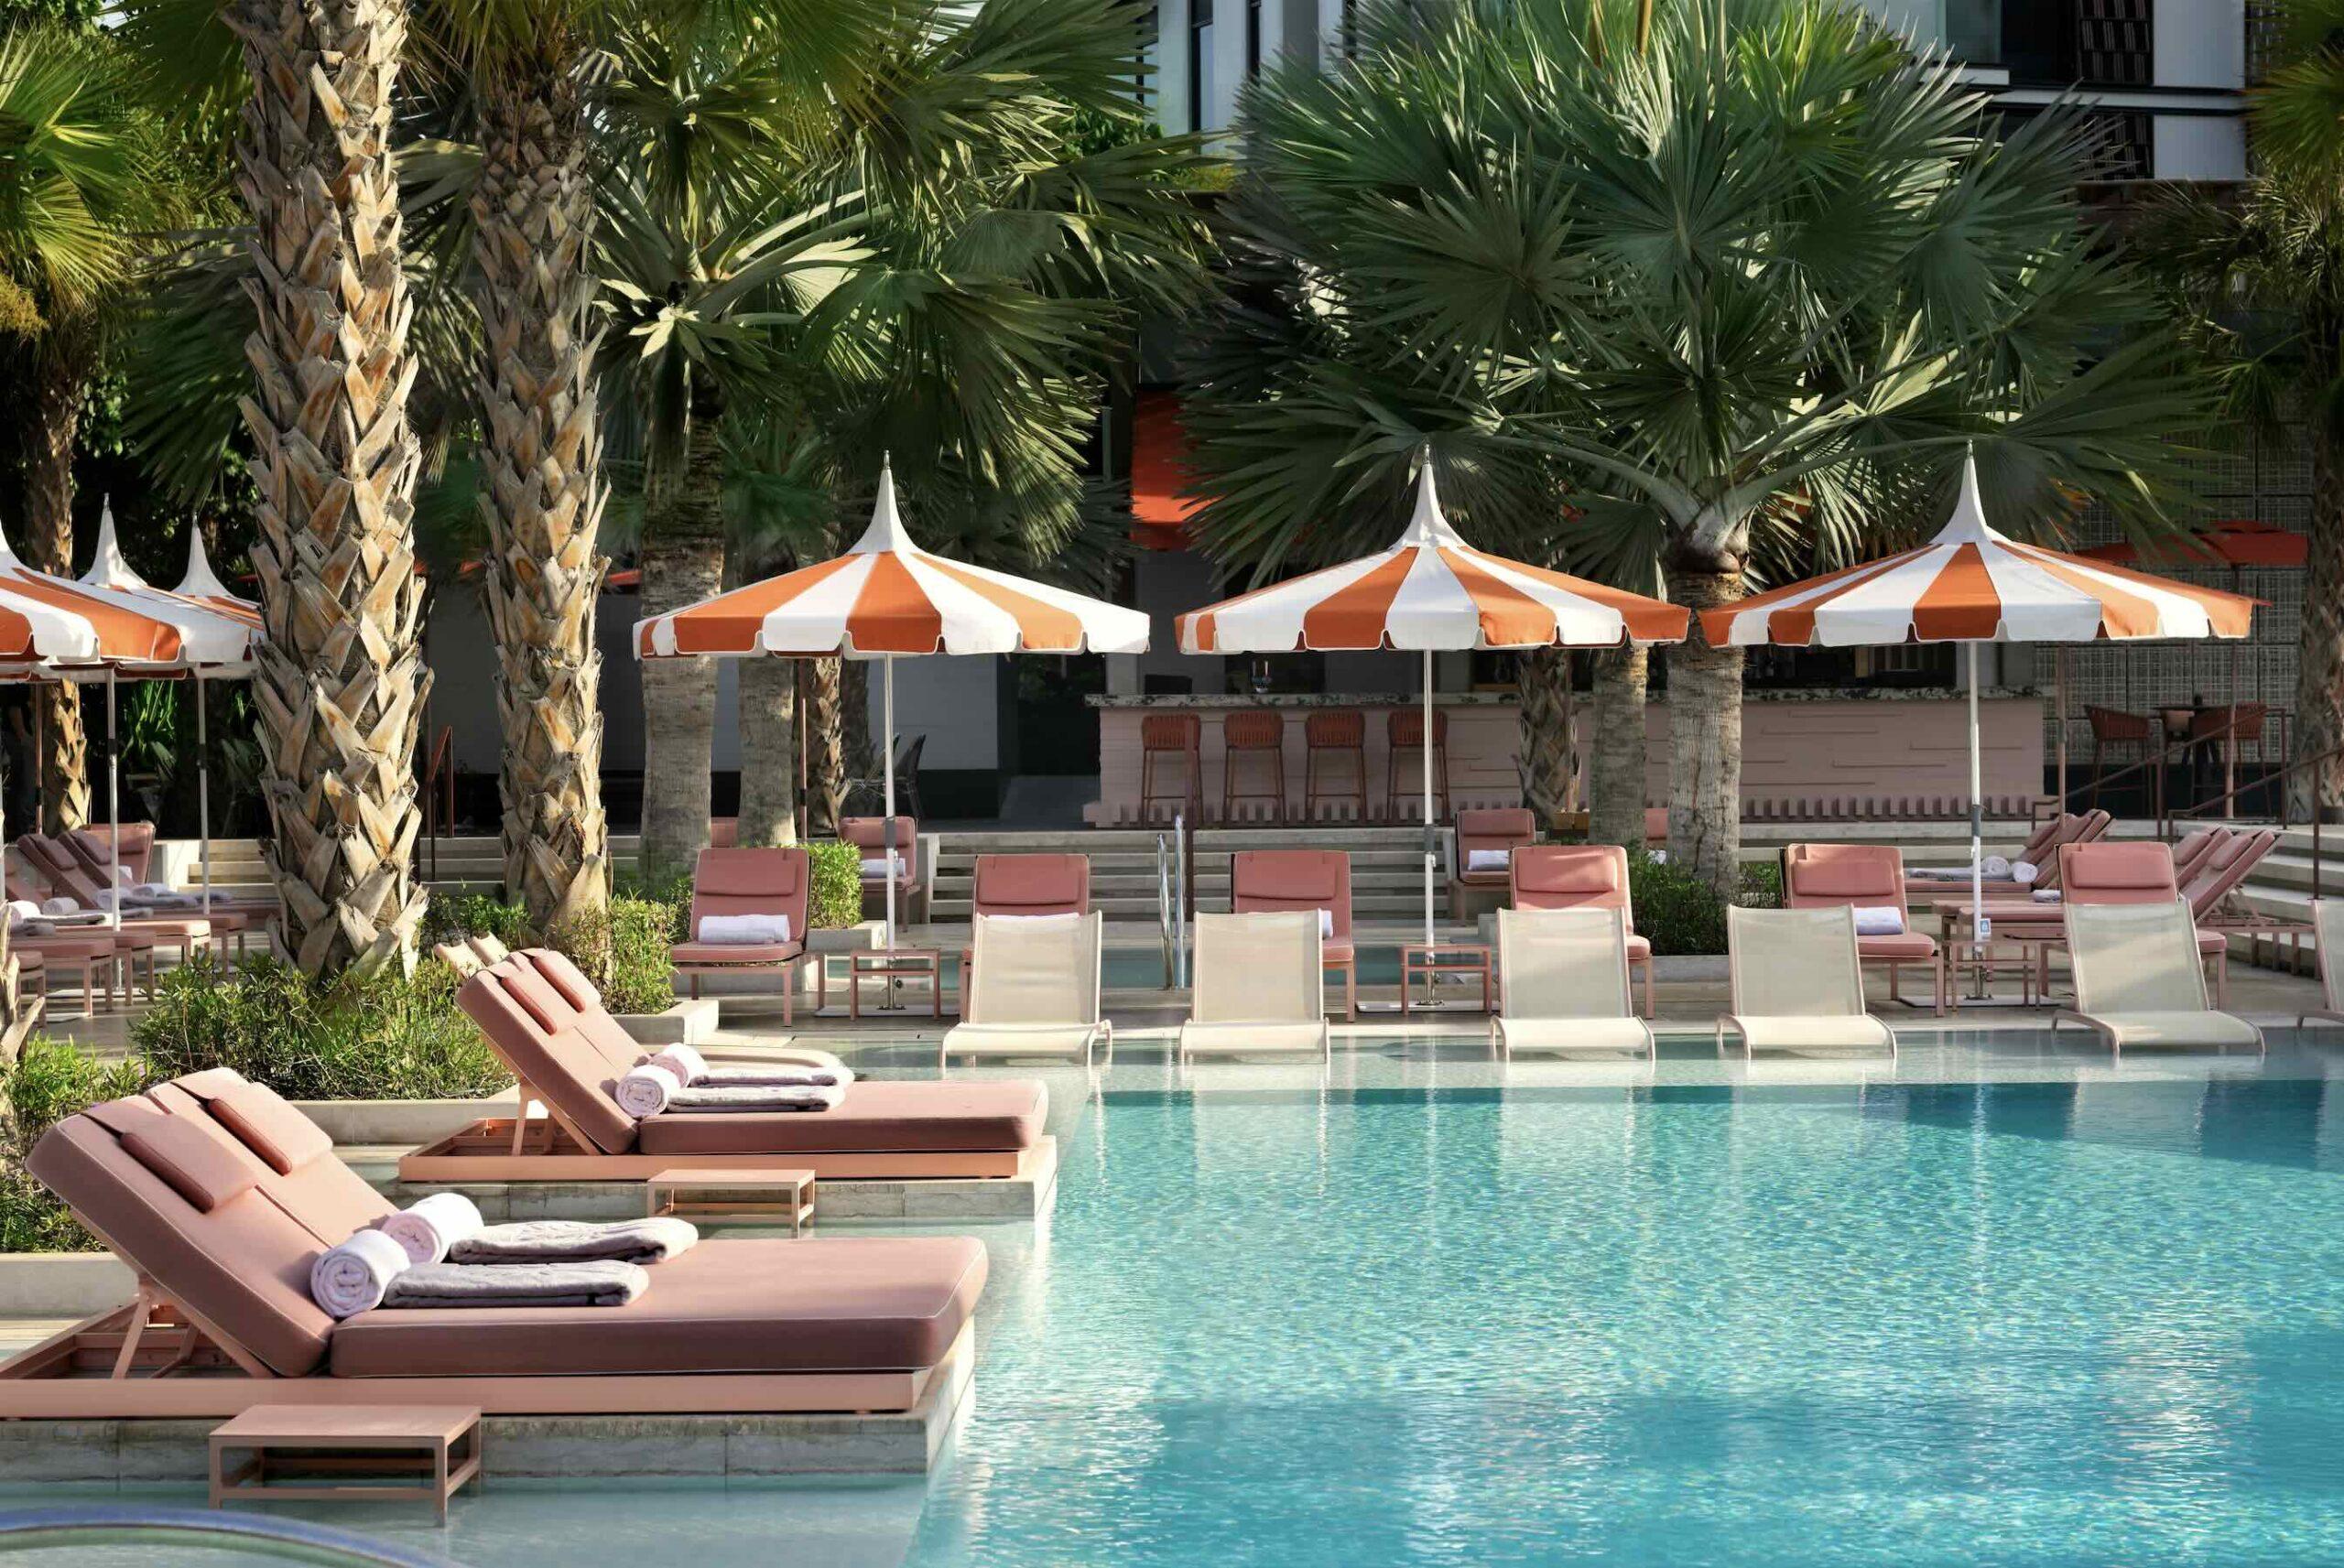 Hotel Hotspot: Banyan Tree Dubai combines coastal beauty with contemporary chic